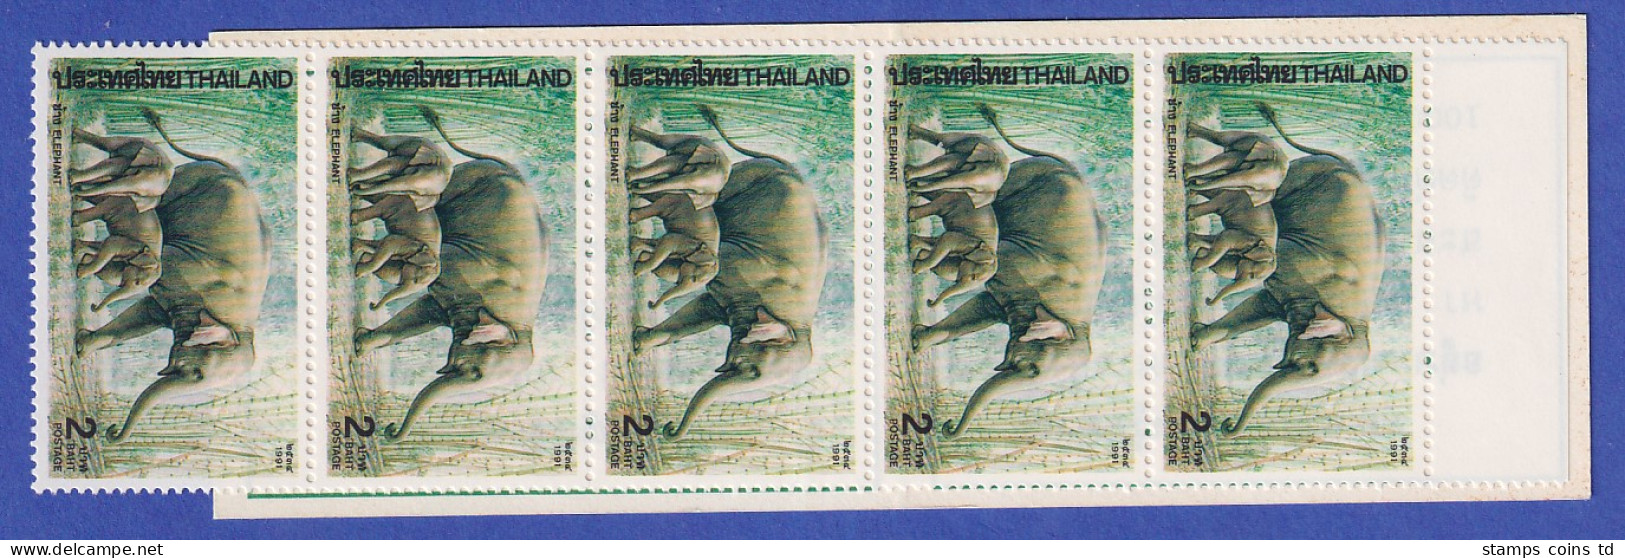 Thailand 1991 Indischer Elefant Mi.-Nr. 1438 Markenheftchen Postfrisch ** / MNH - Thaïlande